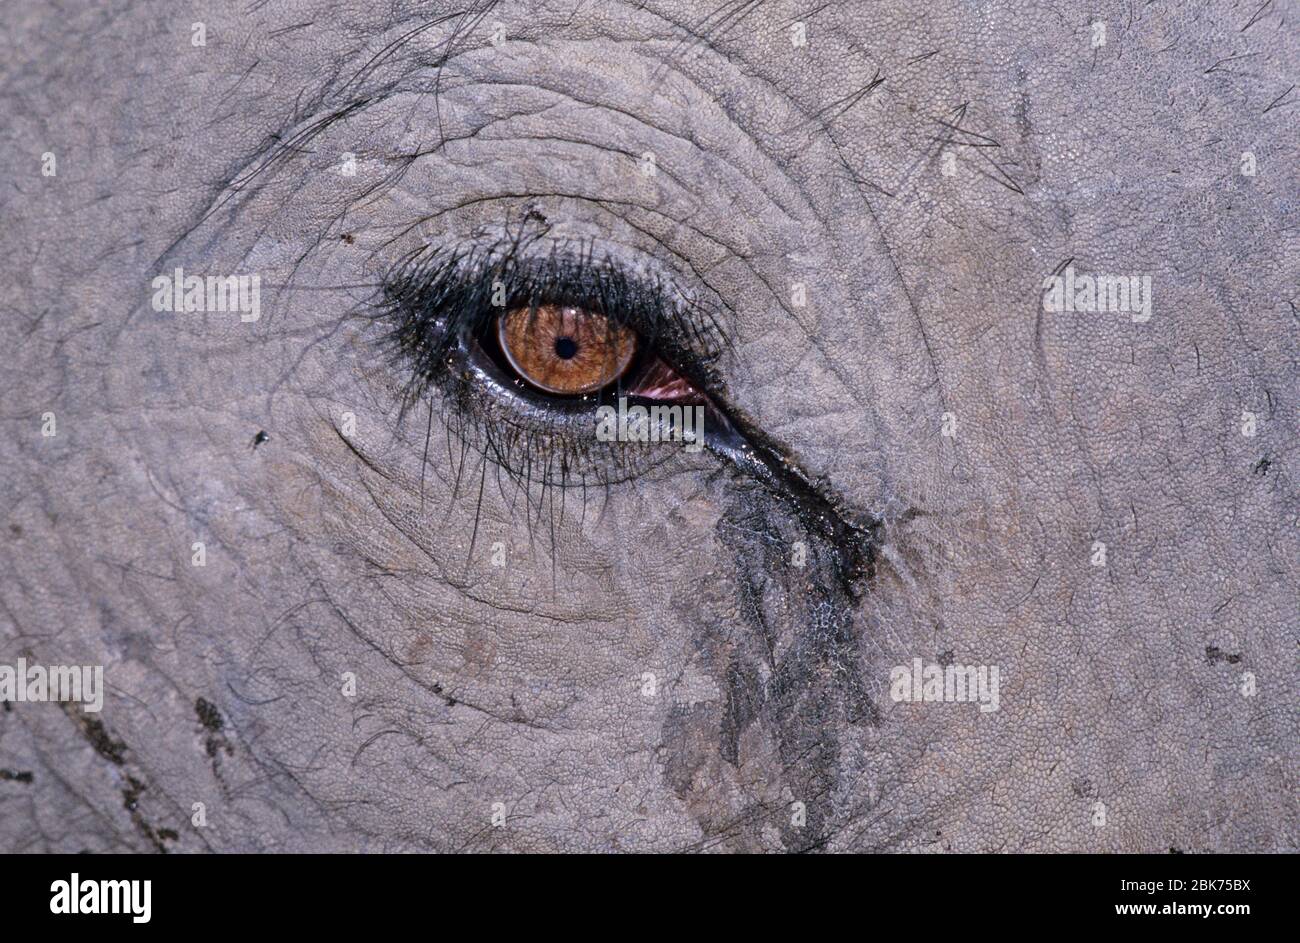 Indian Elephant close up of eye Basndavgarh India Stock Photo